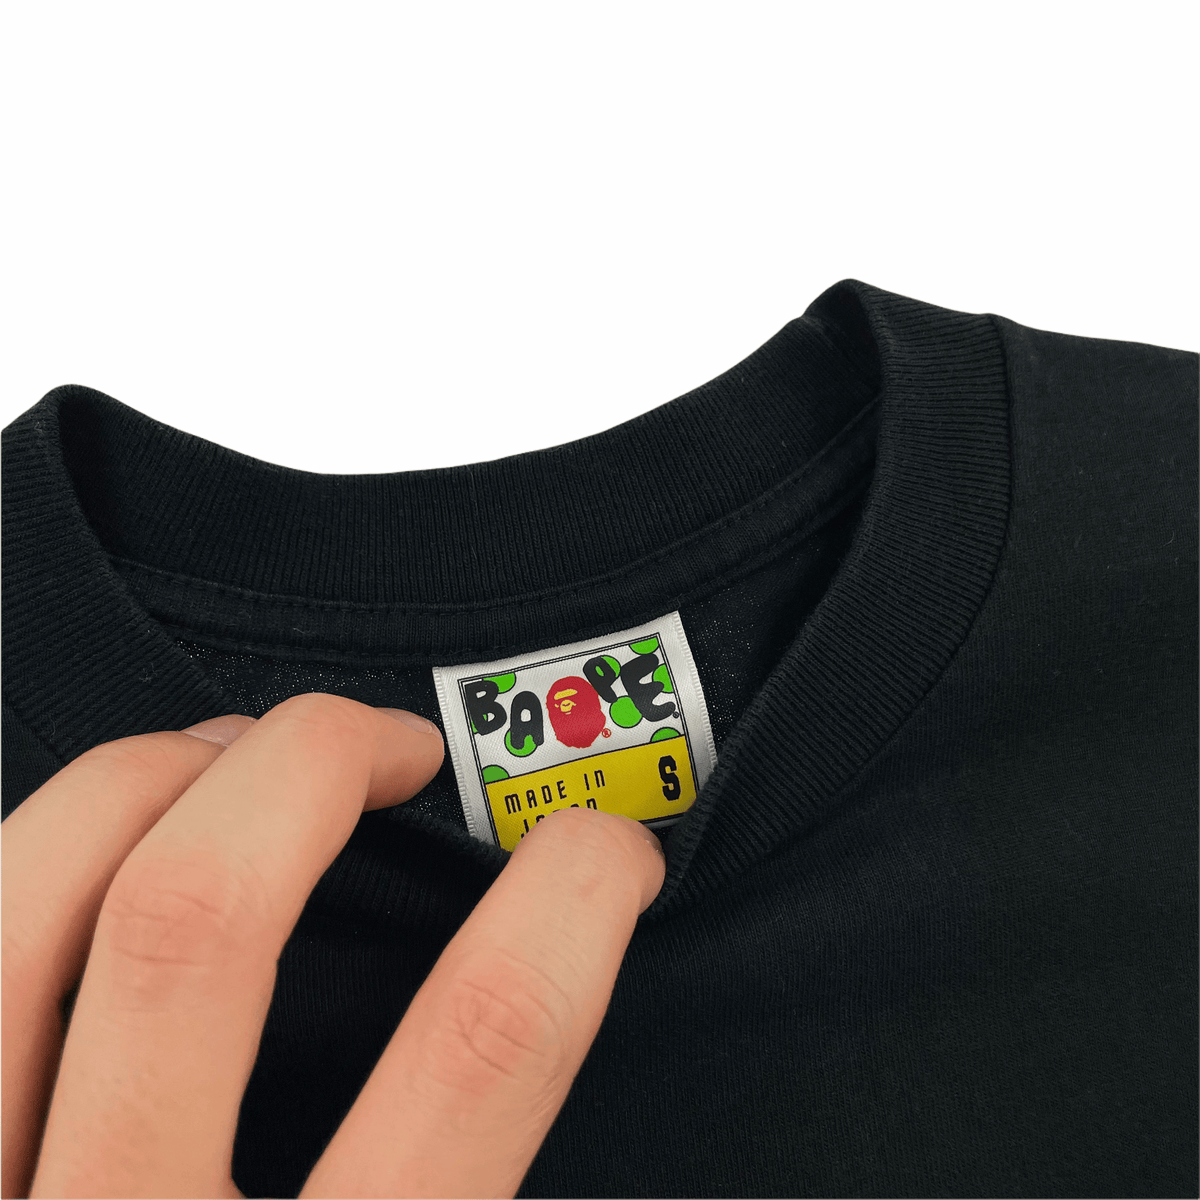 Bape t shirt women’s size S - second wave vintage store